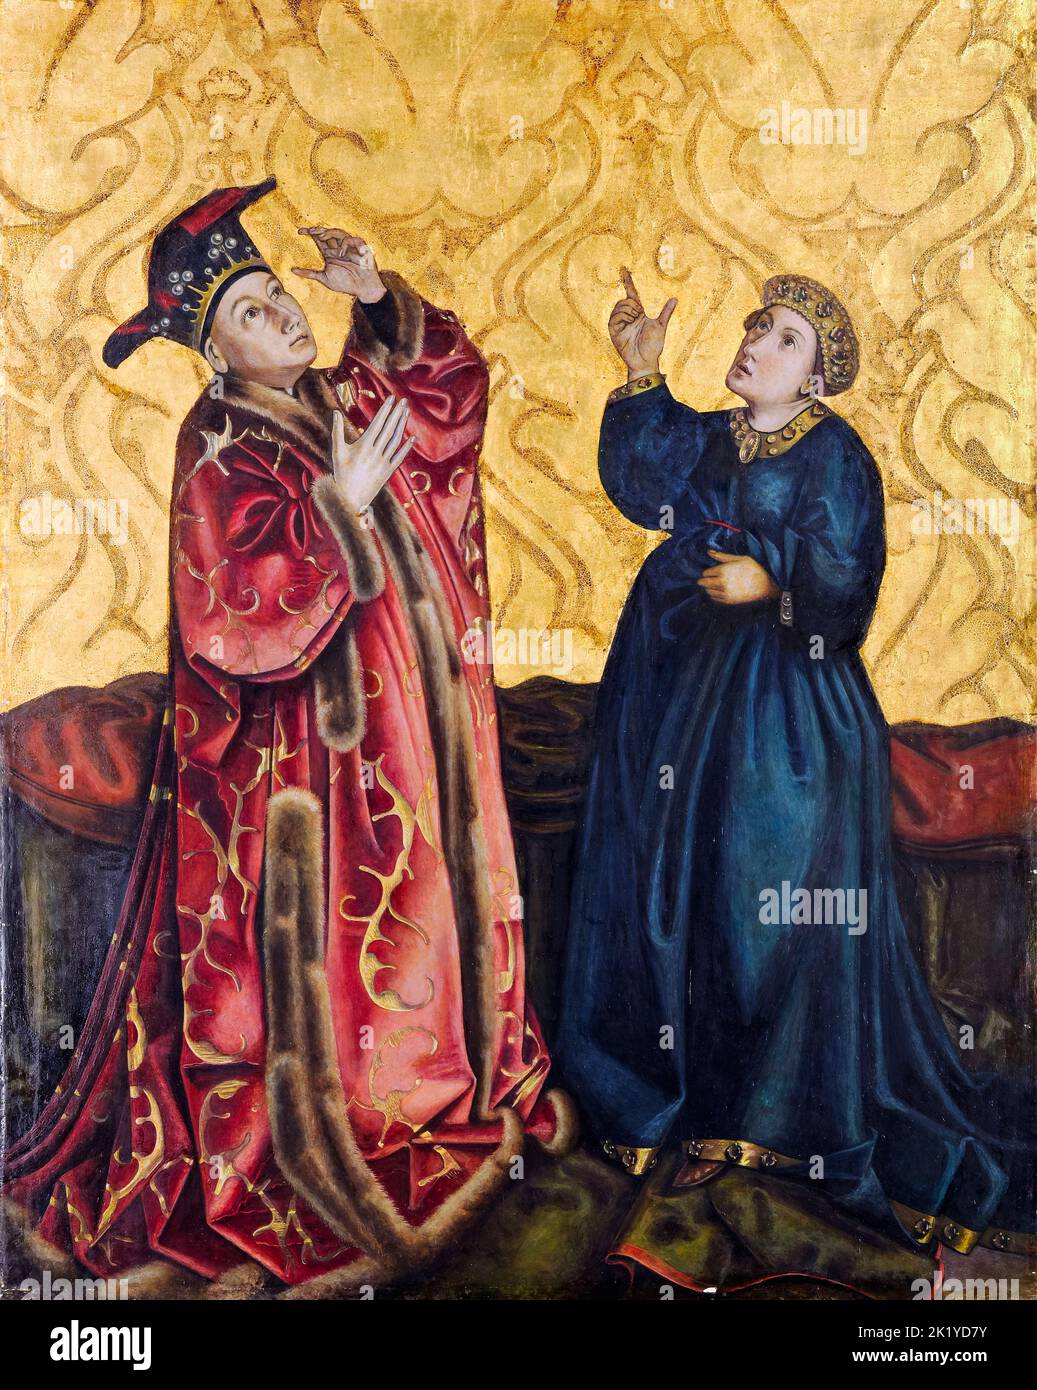 L'empereur Augustus et la Tiburtine Sibyl, copient la peinture à tempera sur bois par Gertrud Bock-Schnirlin après Konrad Witz, vers 1933 Banque D'Images